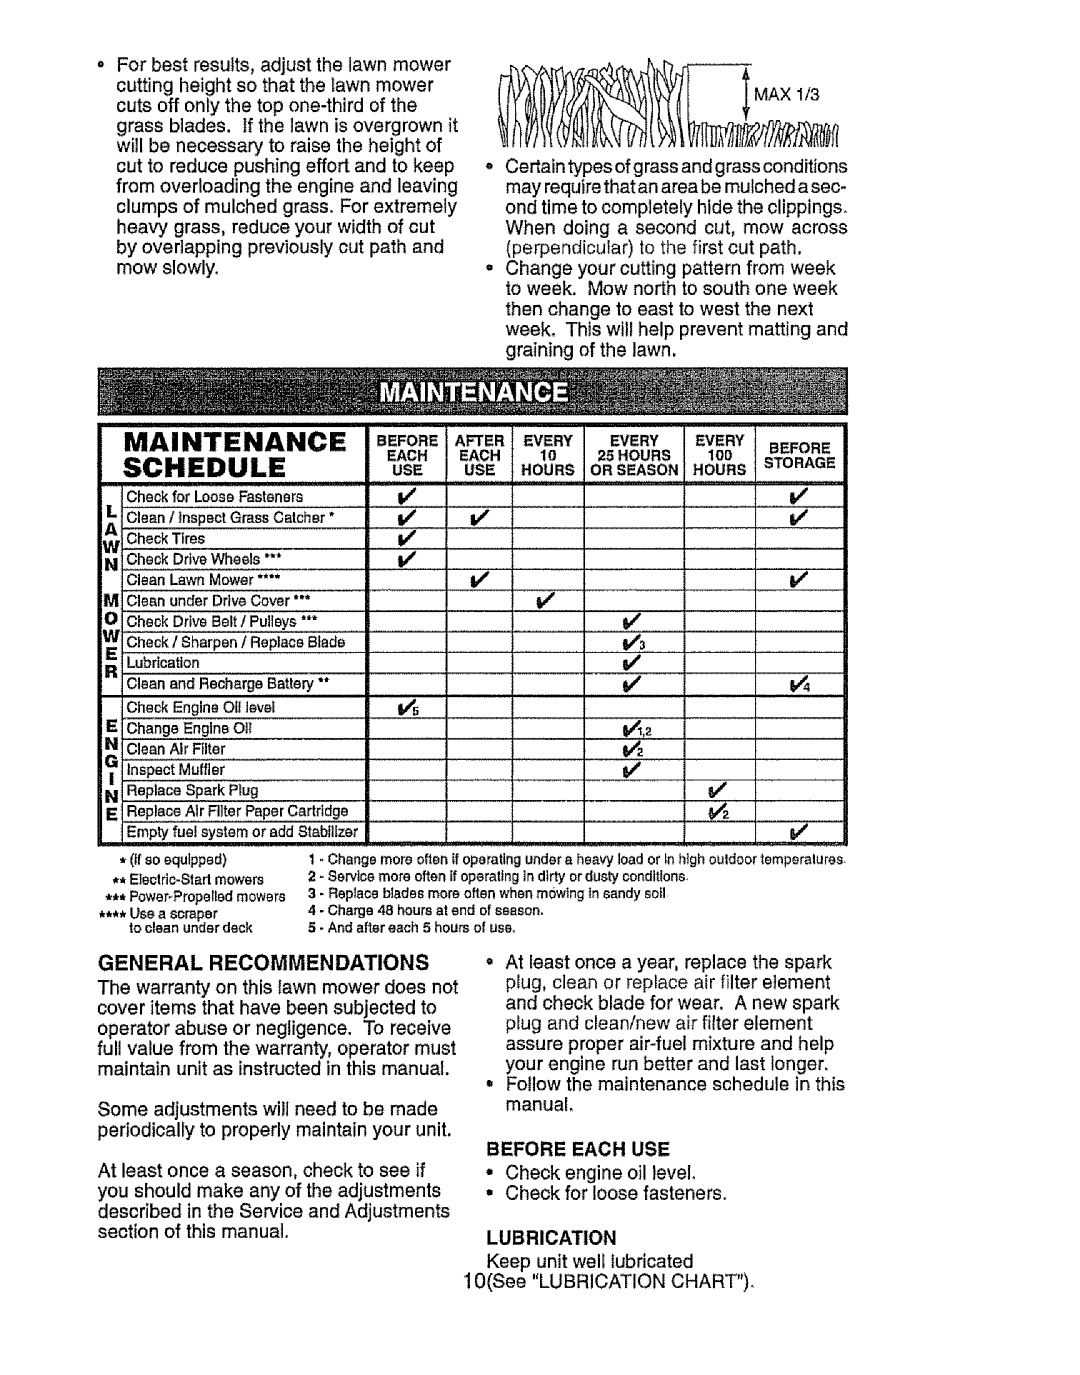 Craftsman 917.385125 owner manual Maintenance Schedule, vv_ v_, inspectMu,ier, General Recommendations 